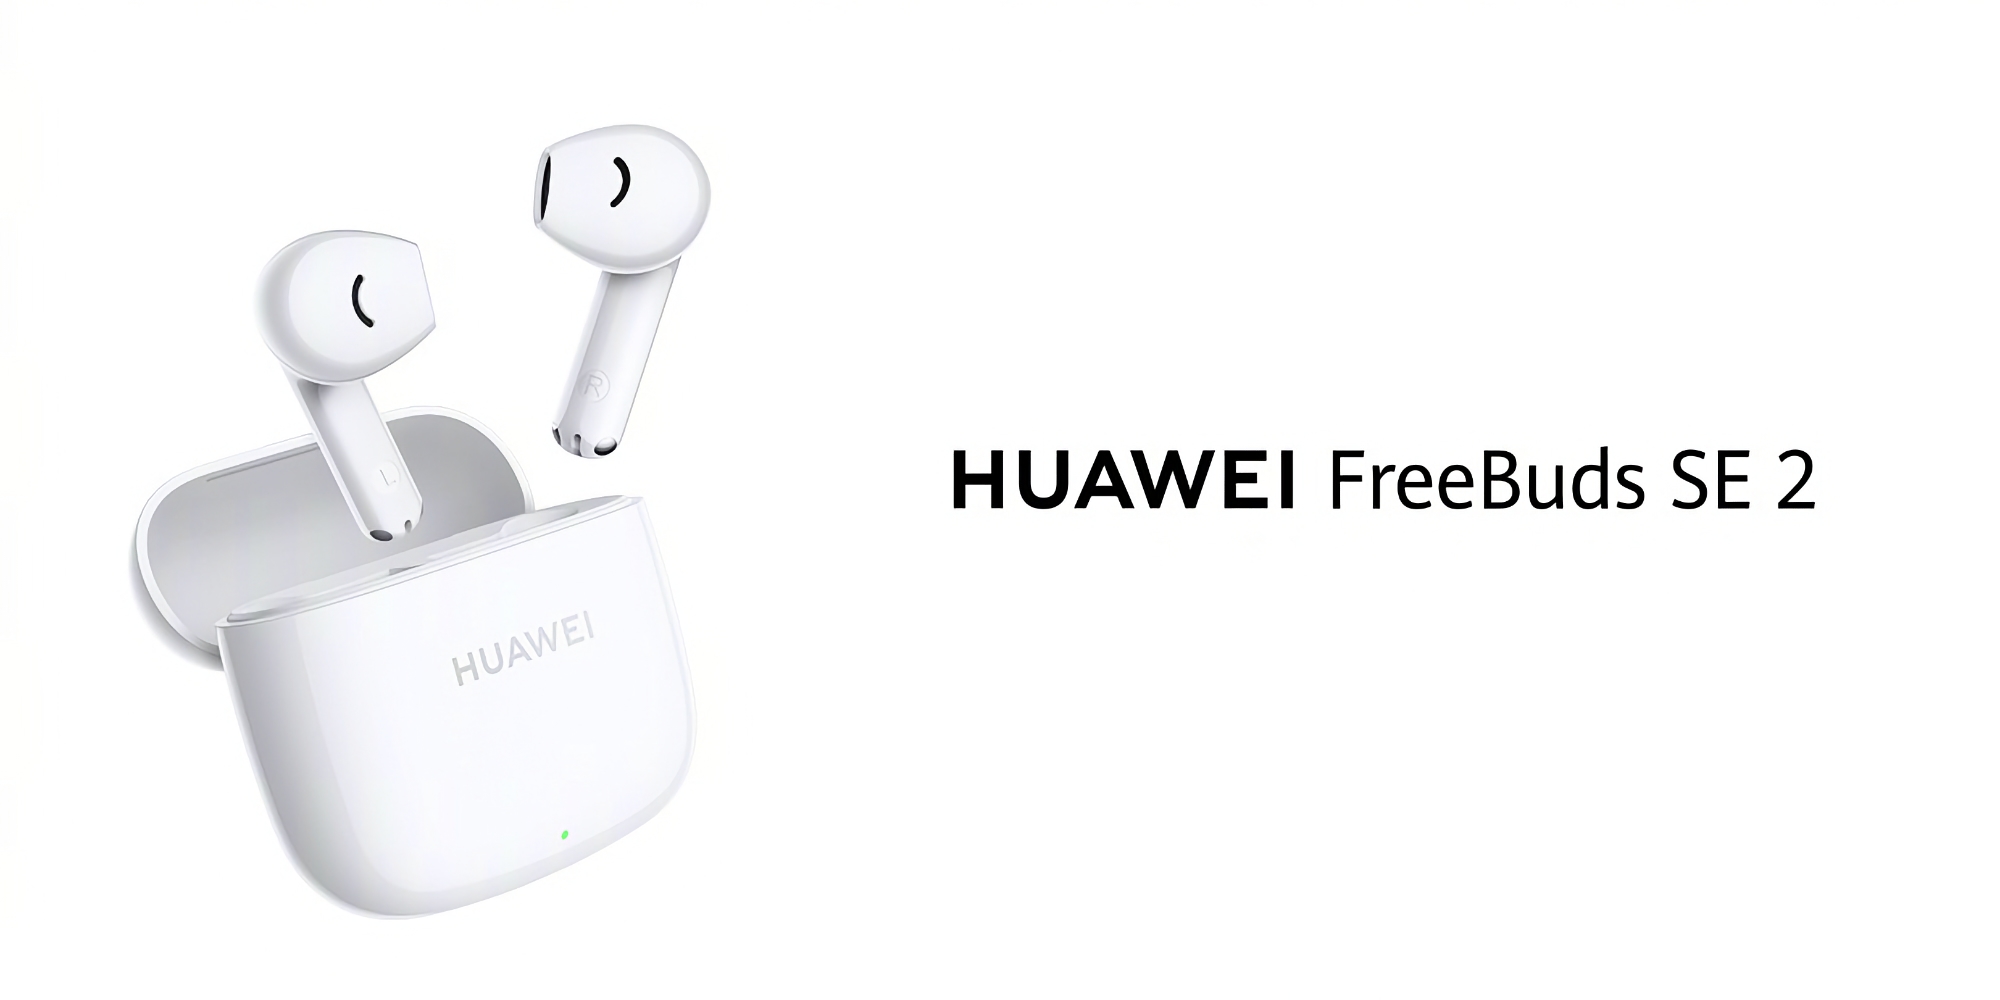 Huawei lanserer FreeBuds SE 2 TWS-hodetelefoner med opptil 40 timers batterilevetid for 24 dollar.